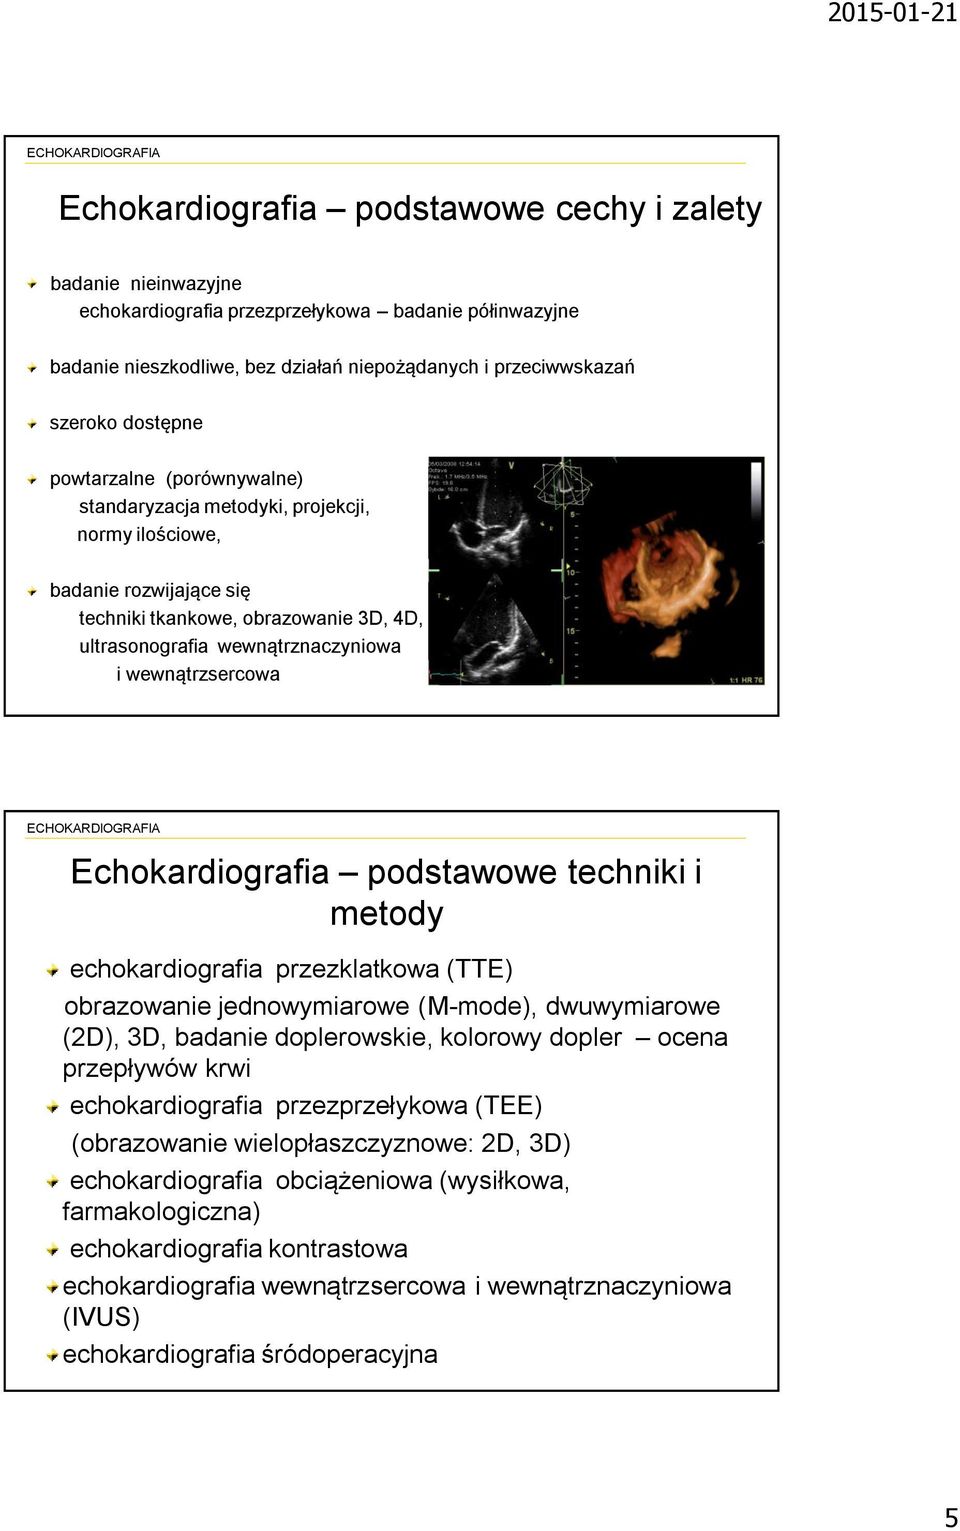 Echokardiografia podstawowe techniki i metody echokardiografia przezklatkowa (TTE) obrazowanie jednowymiarowe (M-mode), dwuwymiarowe (2D), 3D, badanie doplerowskie, kolorowy dopler ocena przepływów